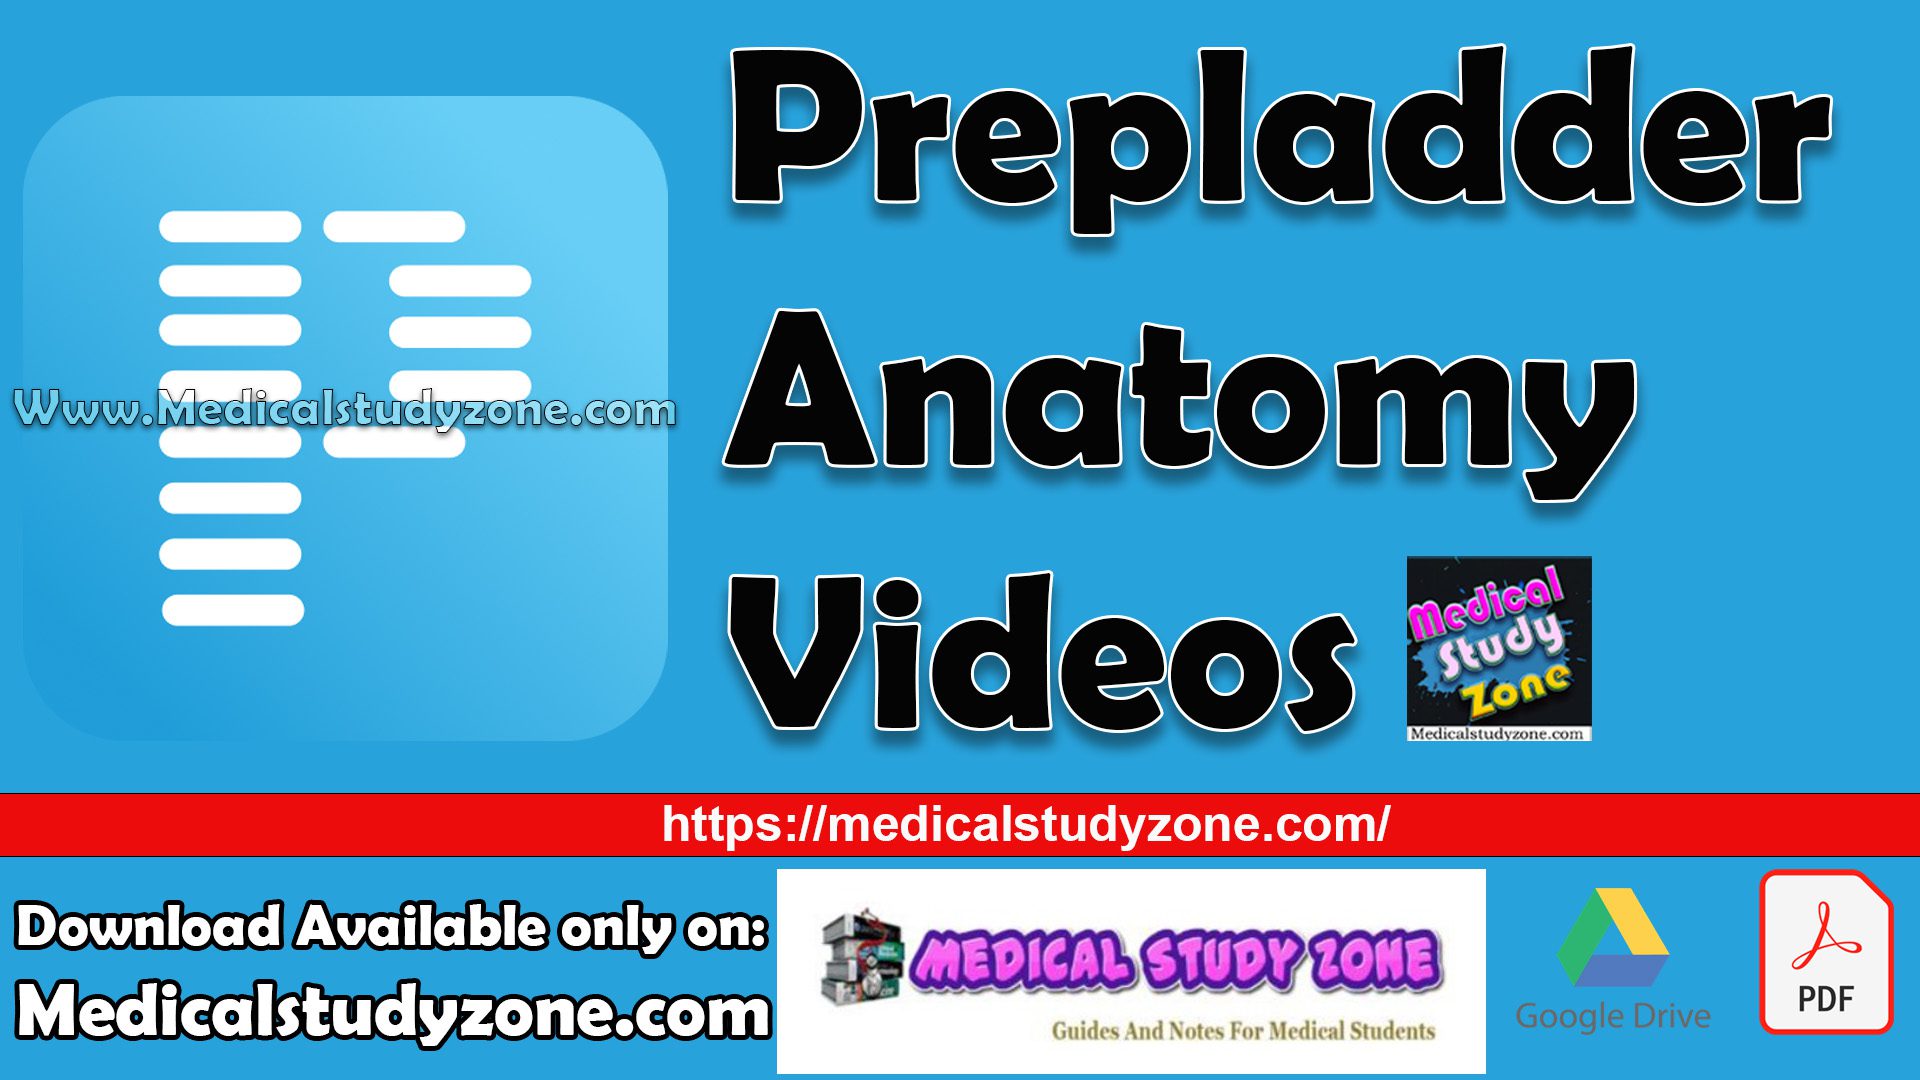 Prepladder Anatomy Videos Free Download